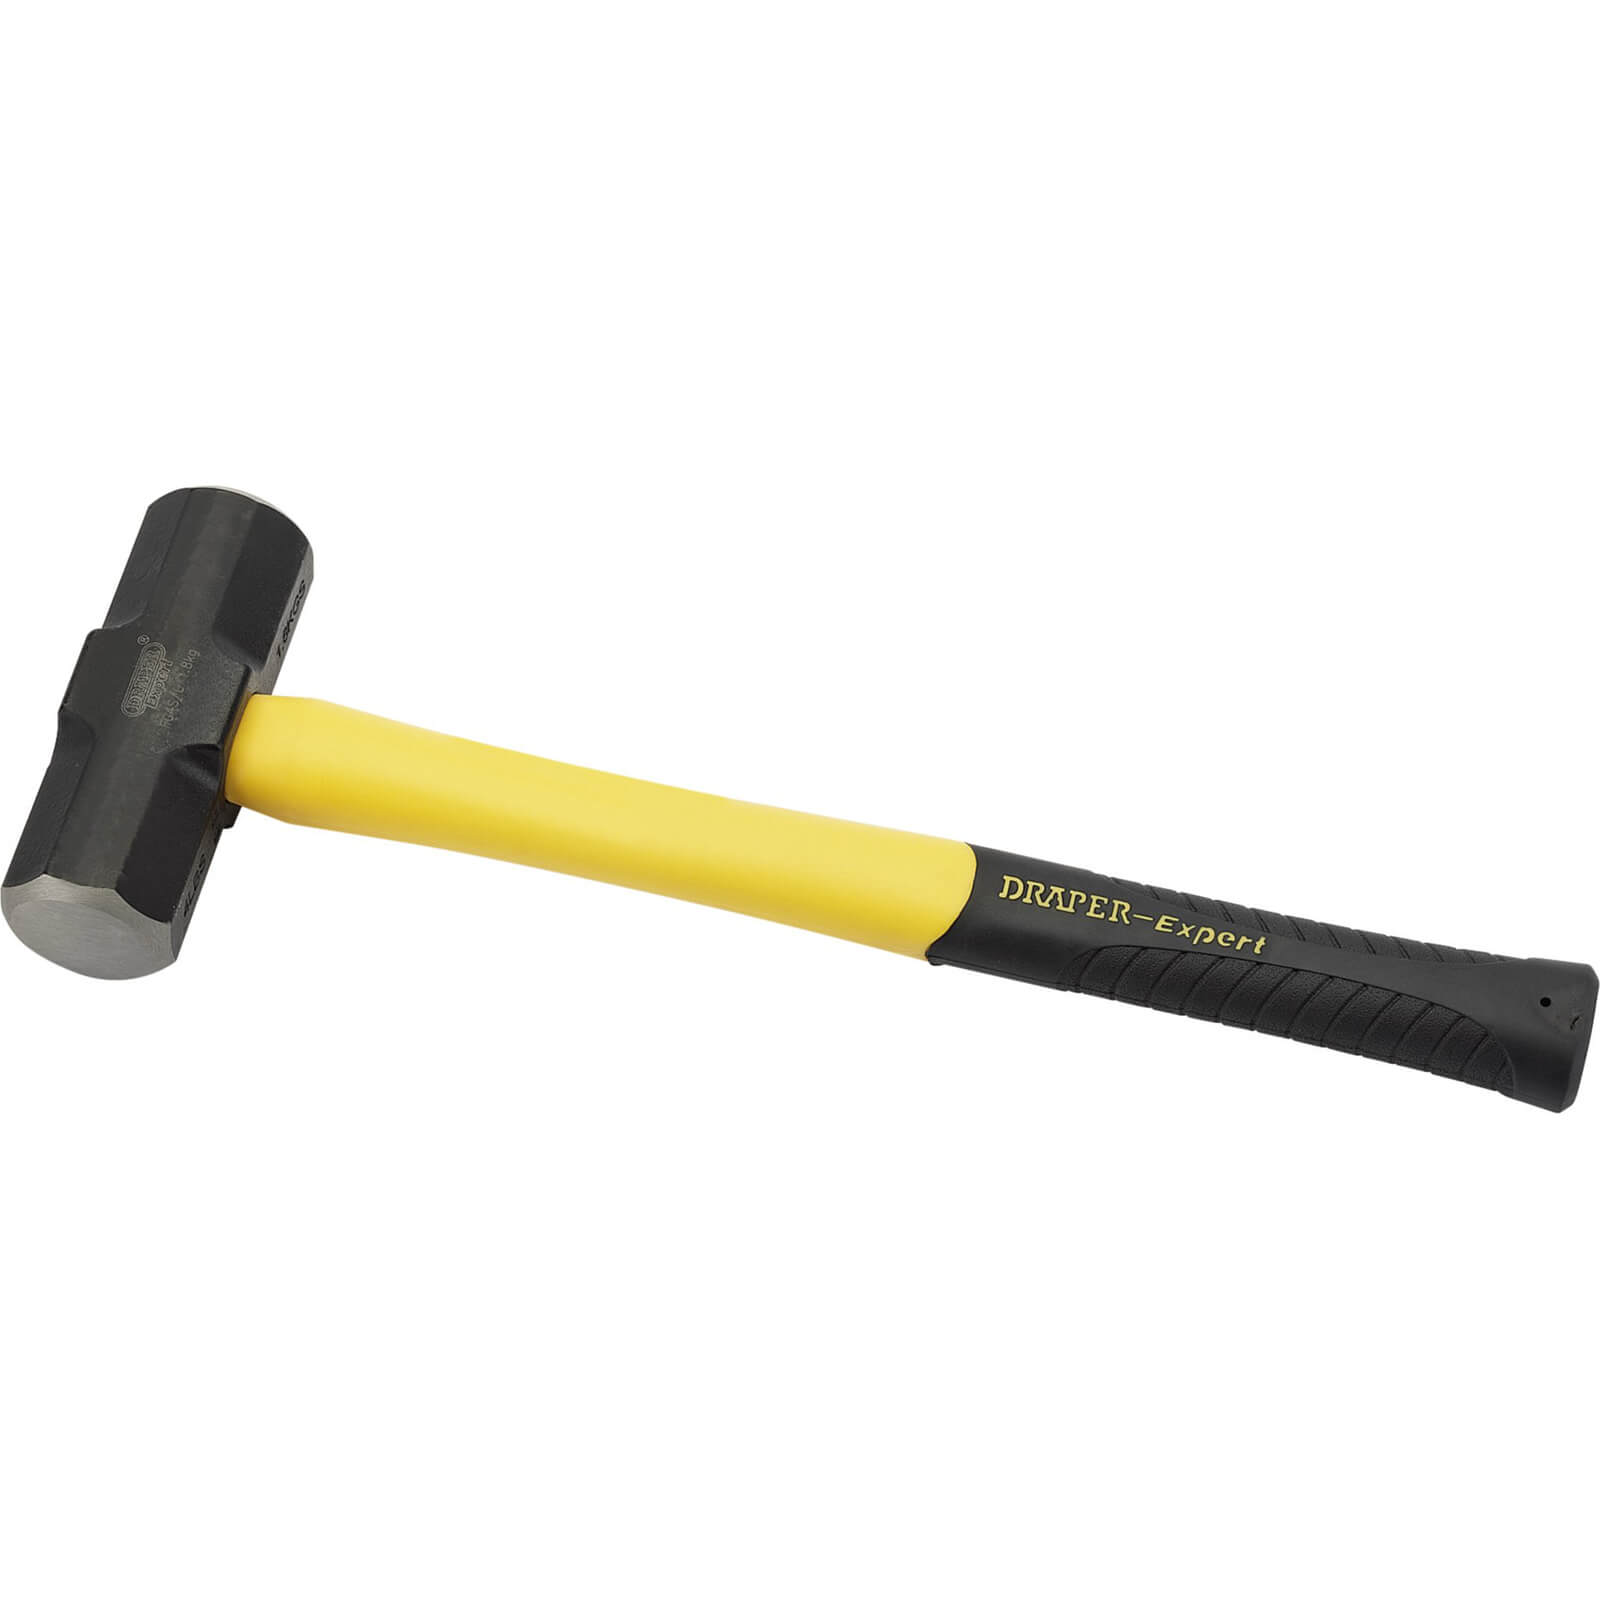 Image of Draper Expert Sledge Hammer 1.8kg